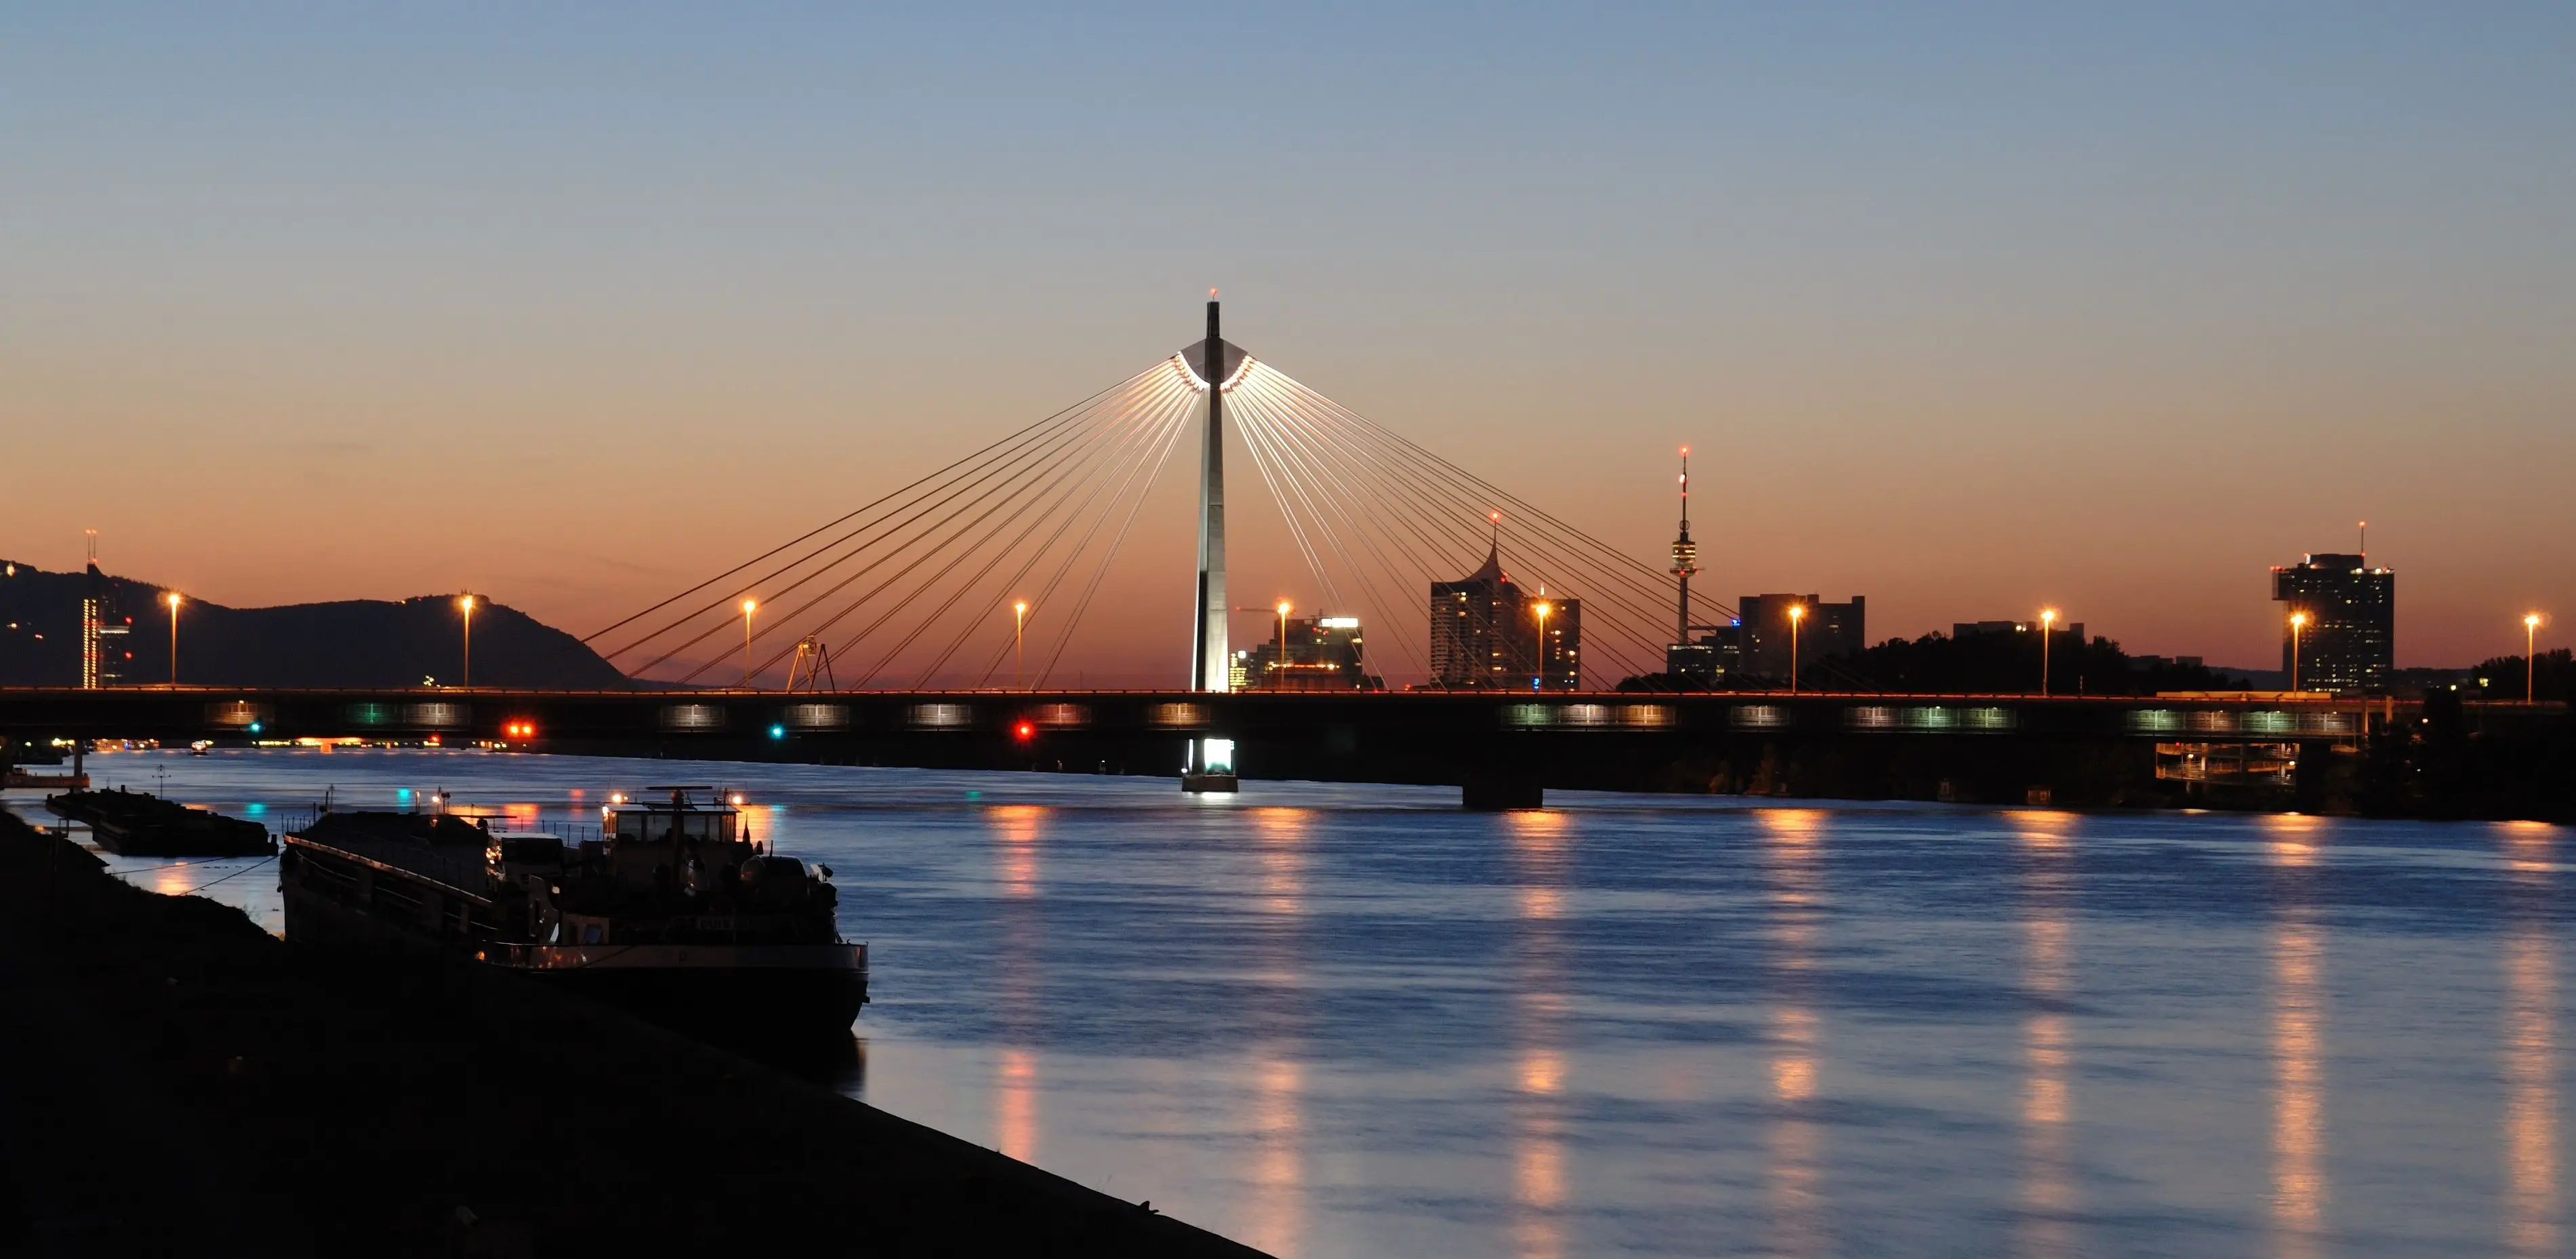 Puente sobre Rio Danubio